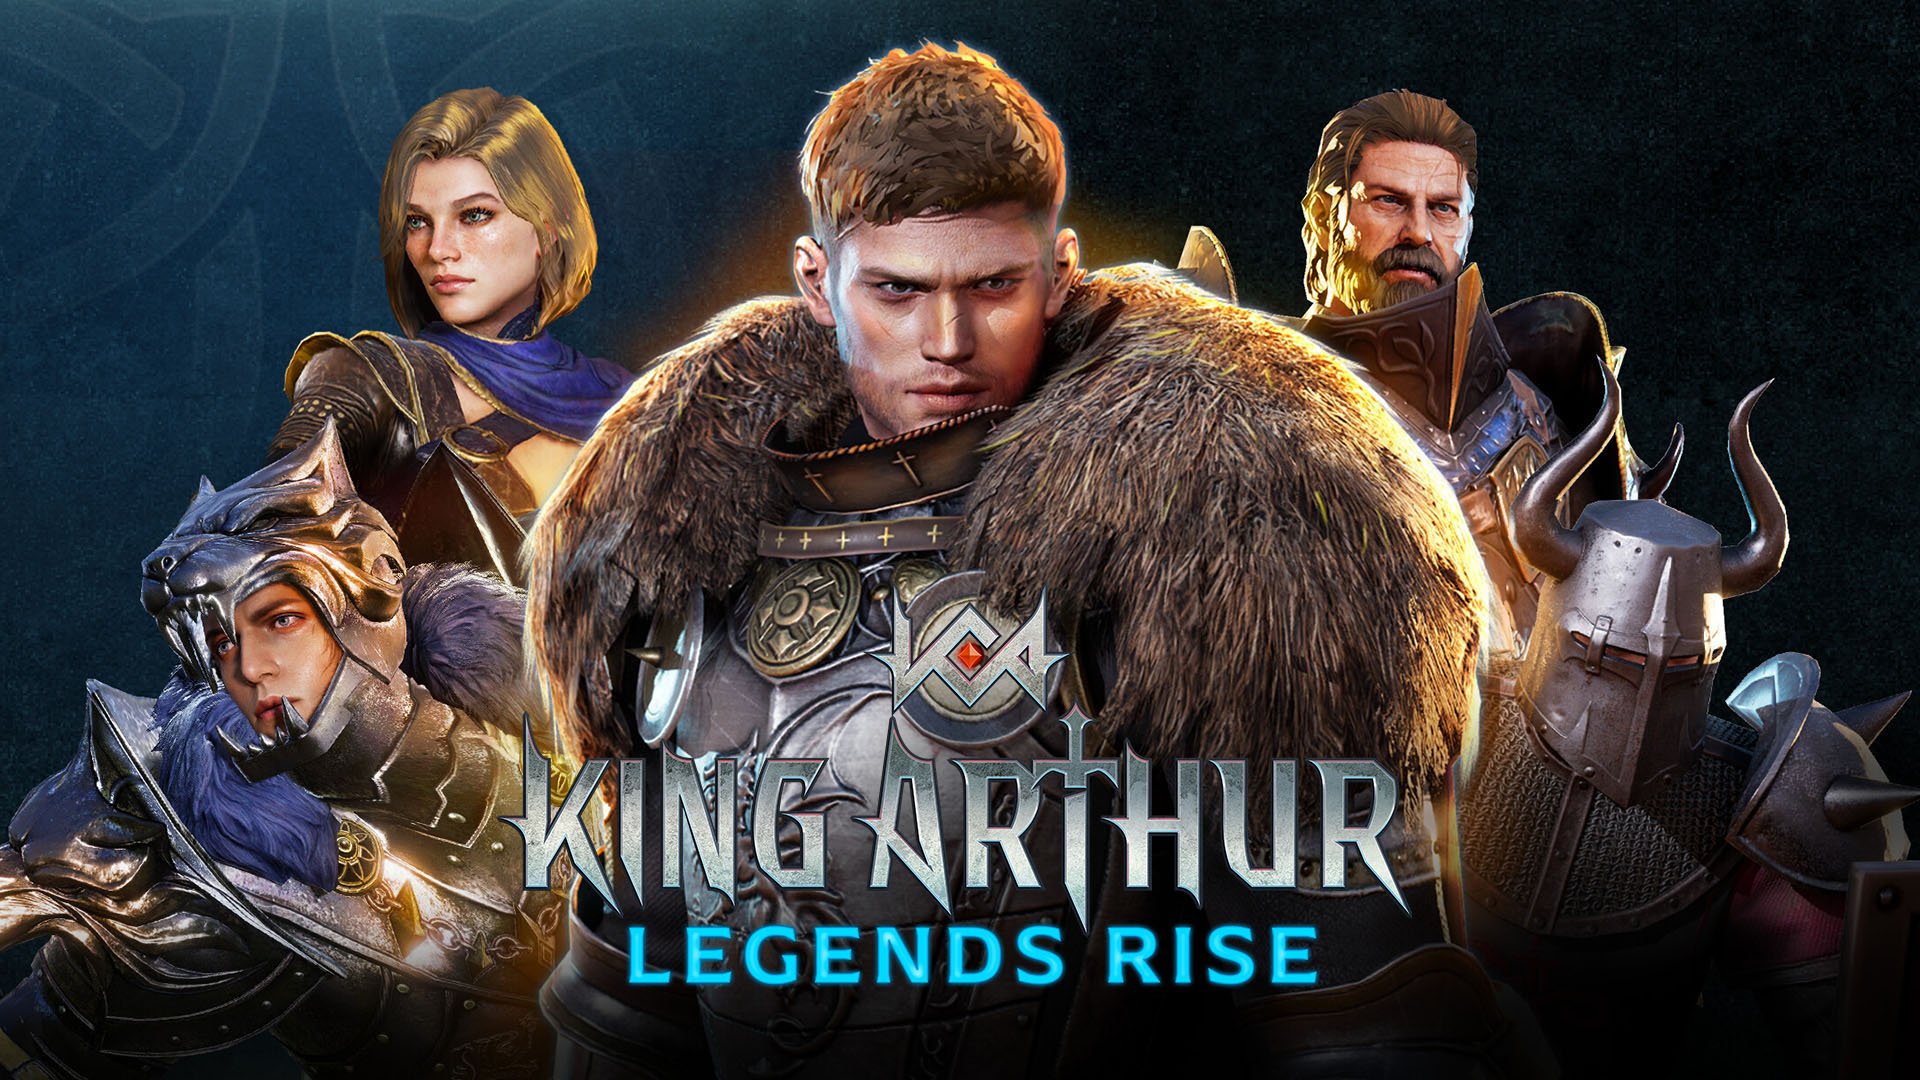 King arthur legends rise key art 8